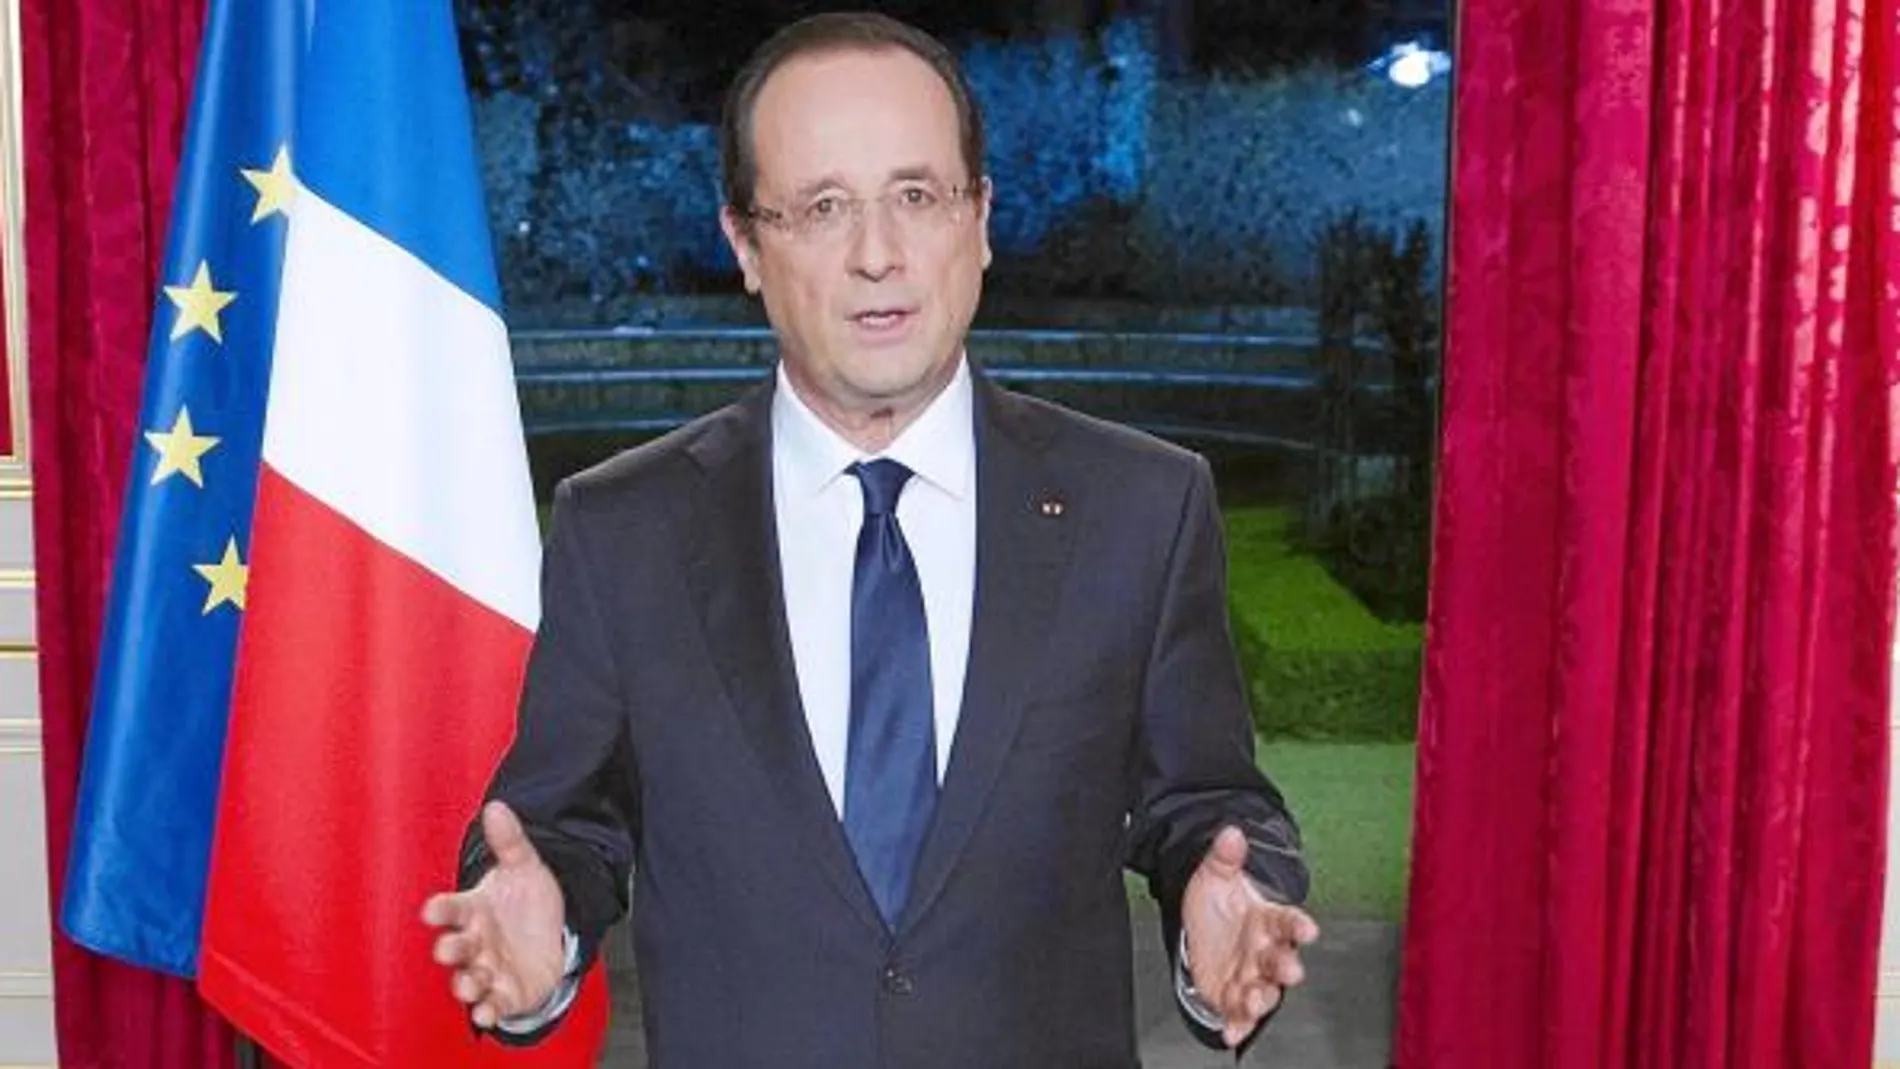 El presidente Hollande, durante su discurso de Año Nuevo